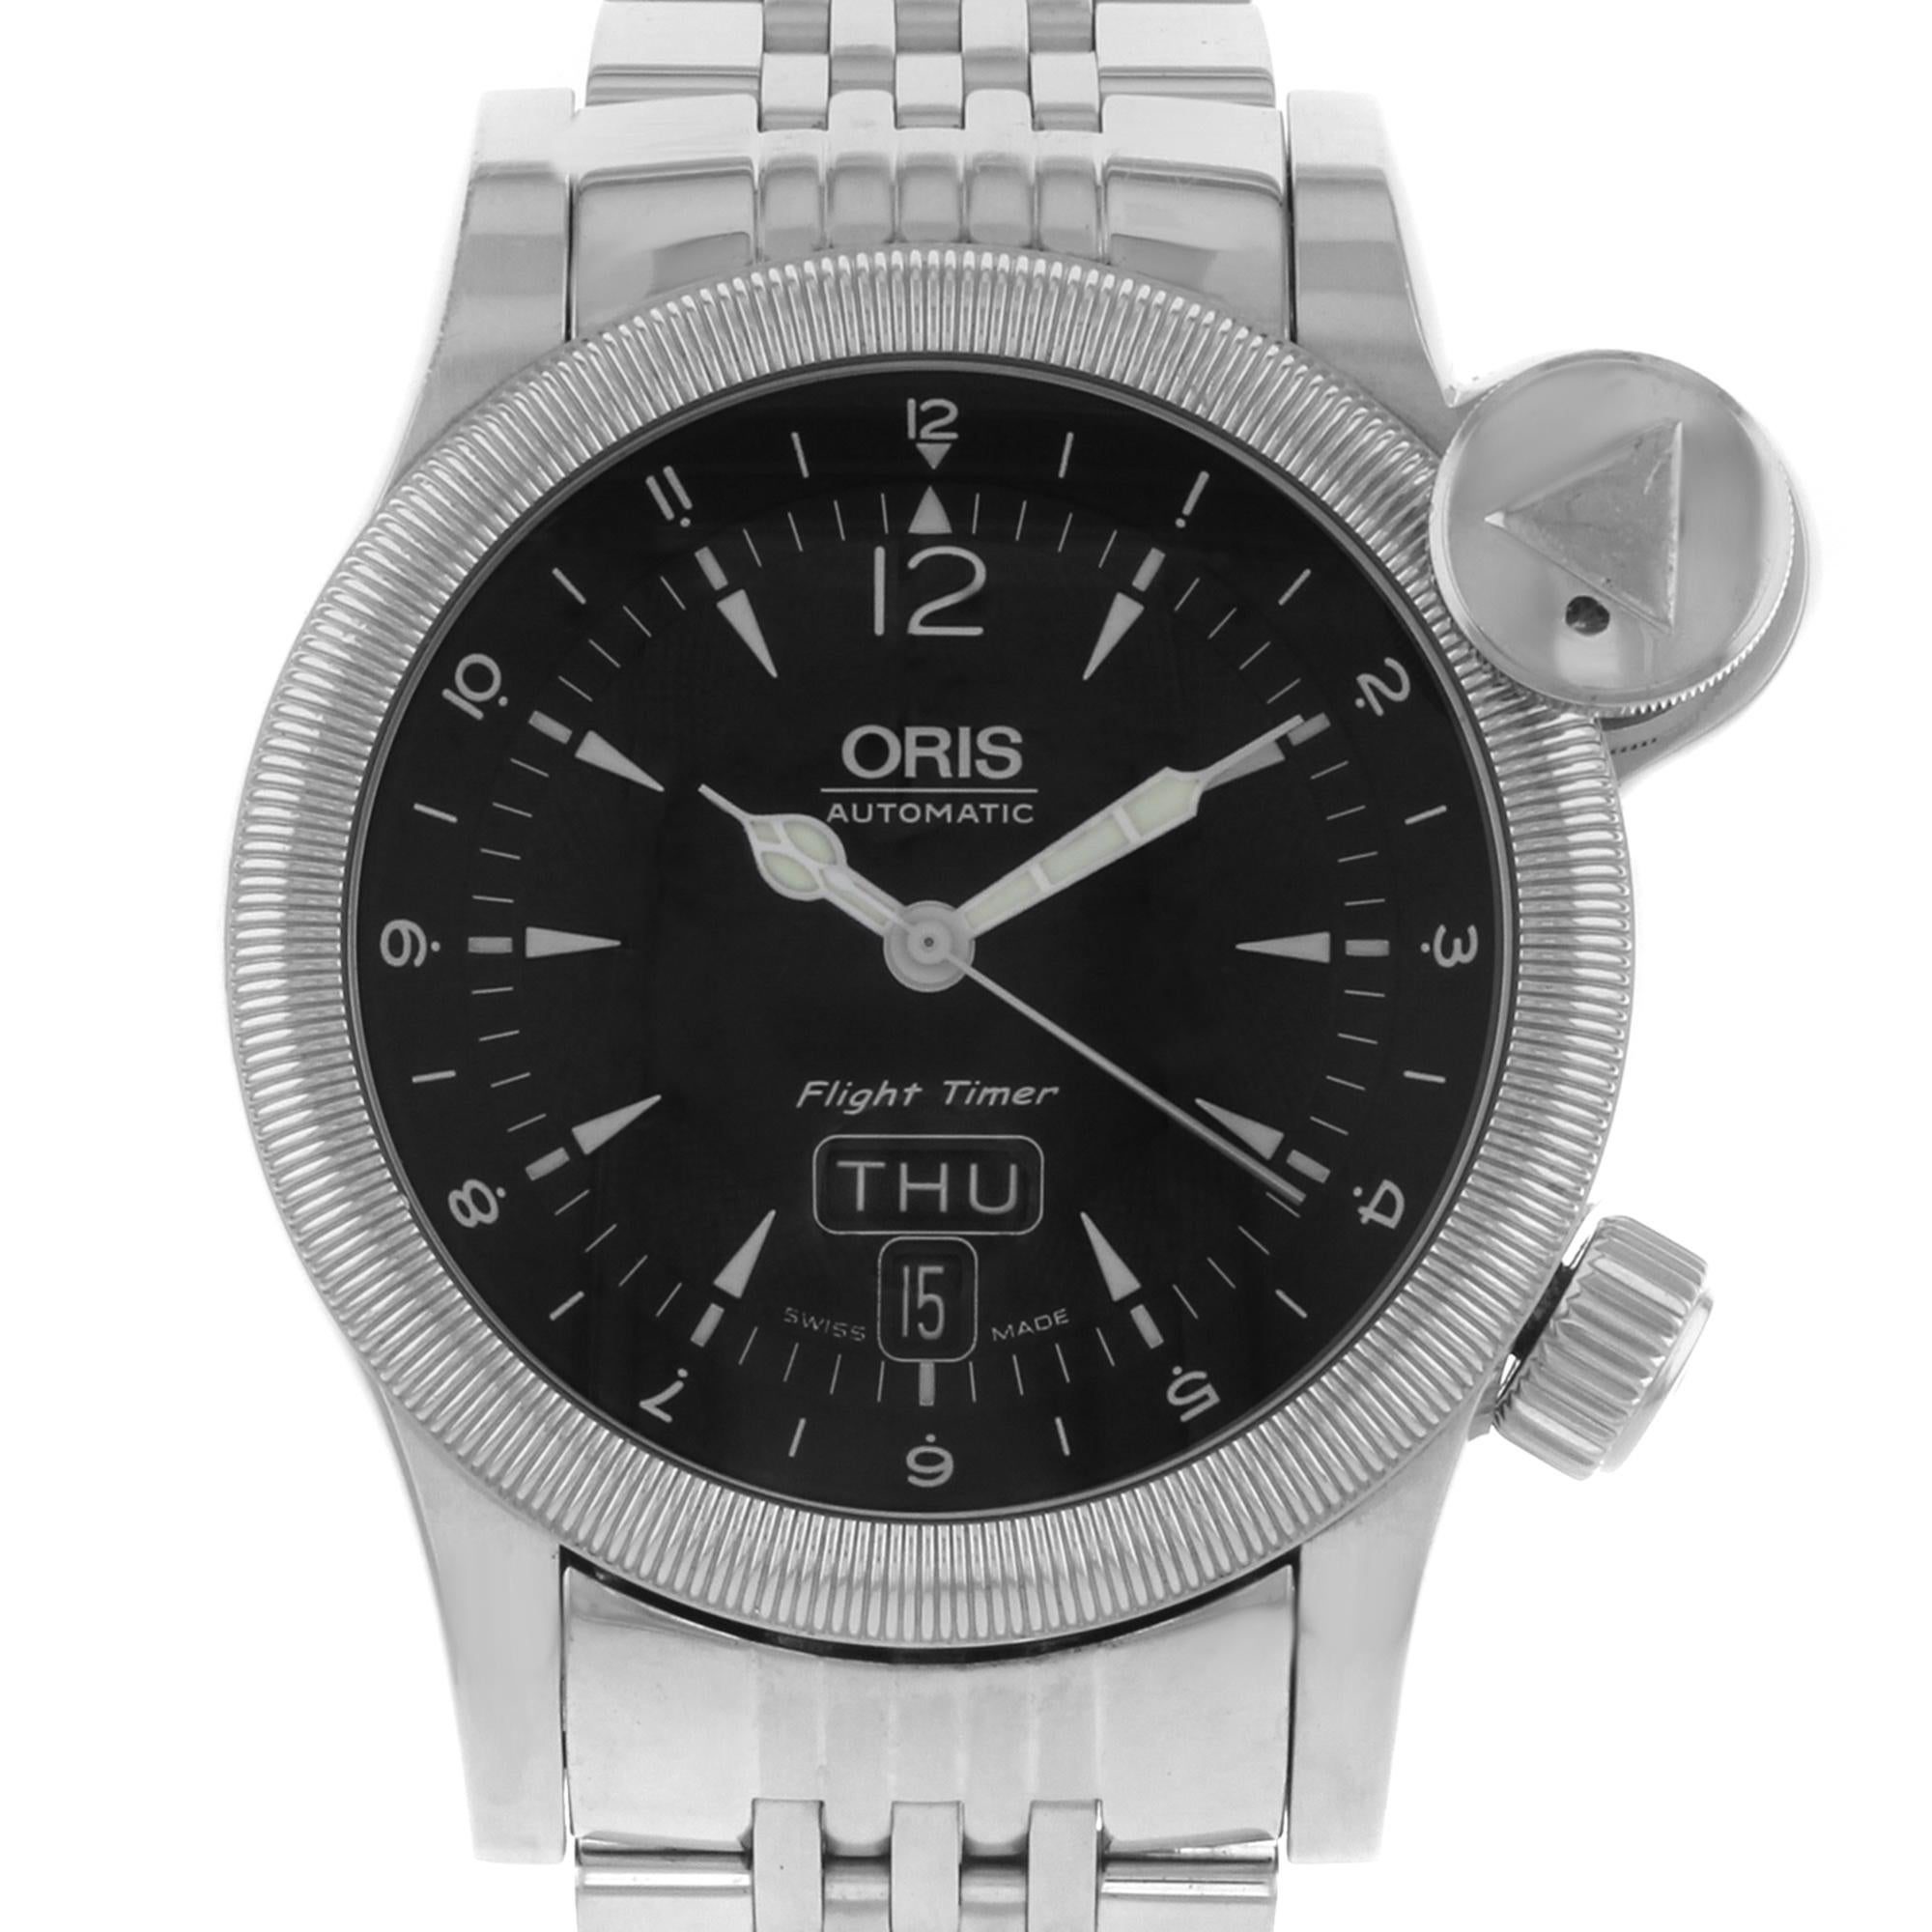 Dieser gebrauchte Oris Flight Timer 63575684064  ist ein schöner Herrenzeitmesser, der von einem mechanischen (automatischen) Uhrwerk angetrieben wird, das in einem Edelstahlgehäuse untergebracht ist. Sie hat ein rundes Zifferblatt, einen